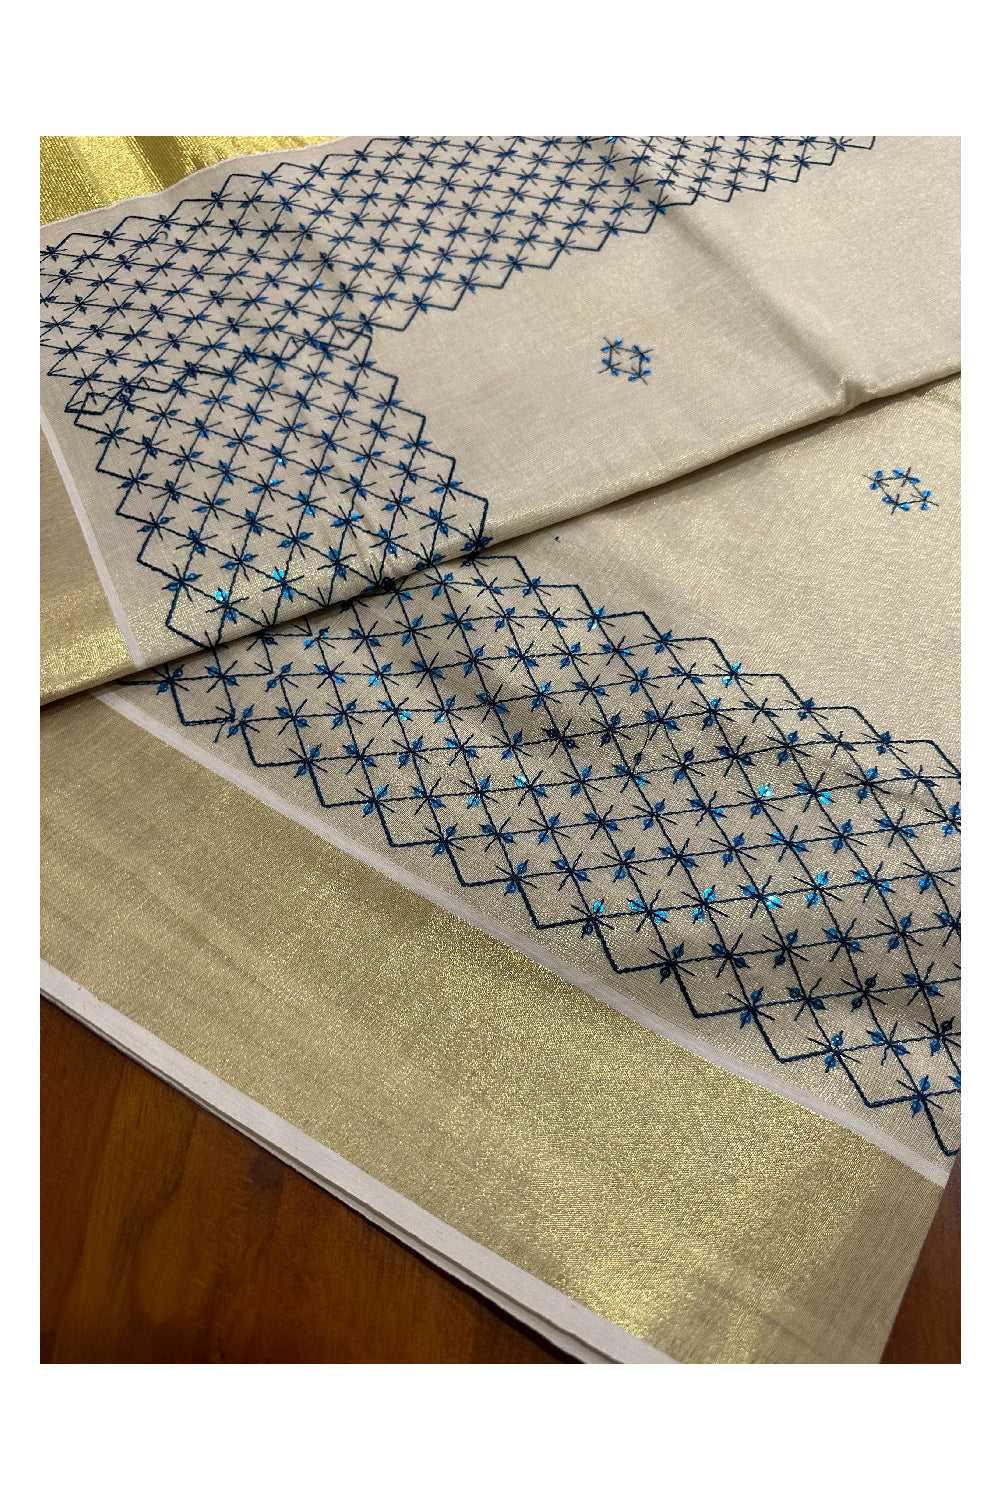 Kerala Tissue Kasavu Sequins Heavy Work Saree with Blue Thread Work Design